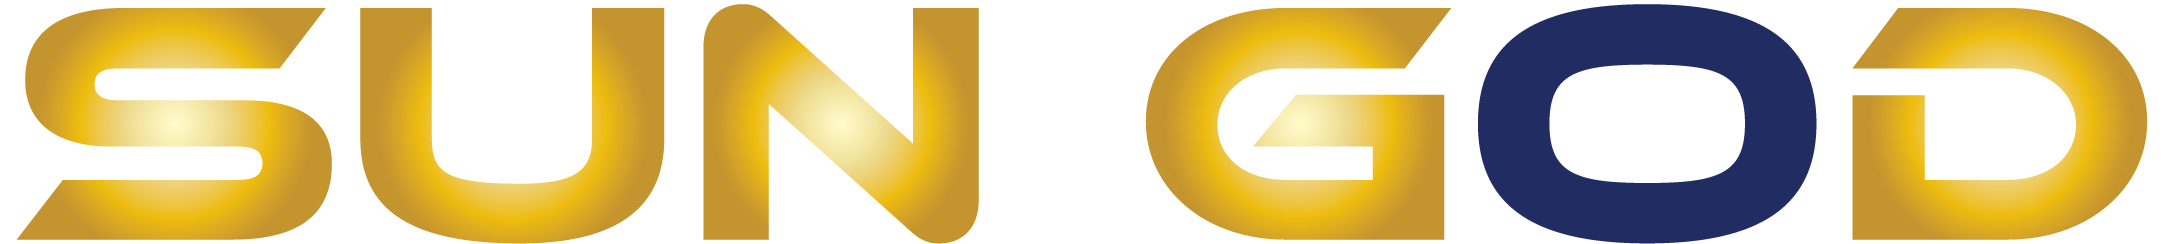 Sun God logo